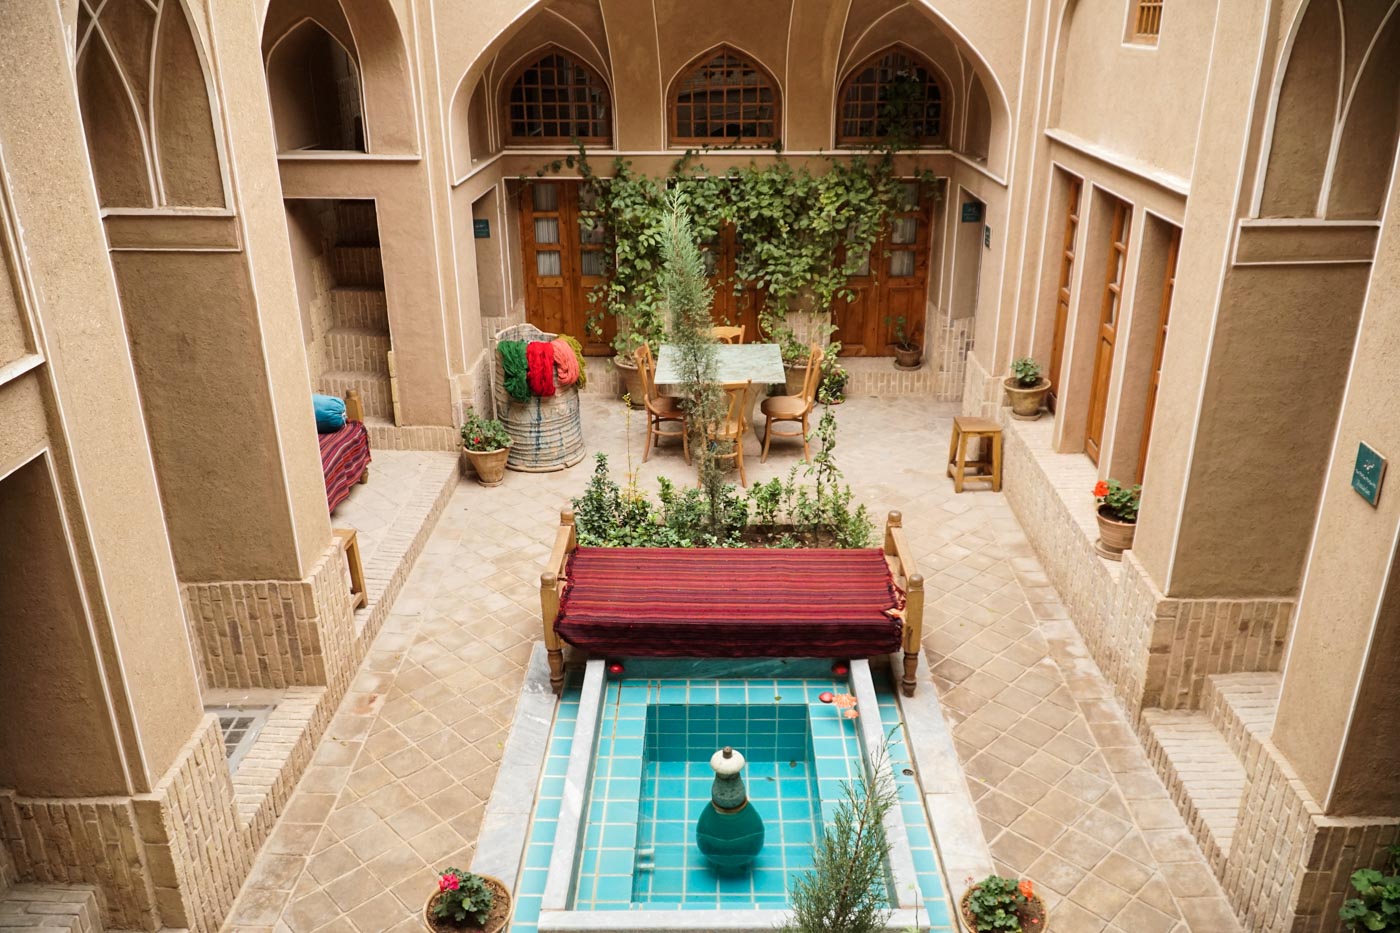 Salão de hotel tradicional do Irã com uma fonte no meio muitas janelas em volta